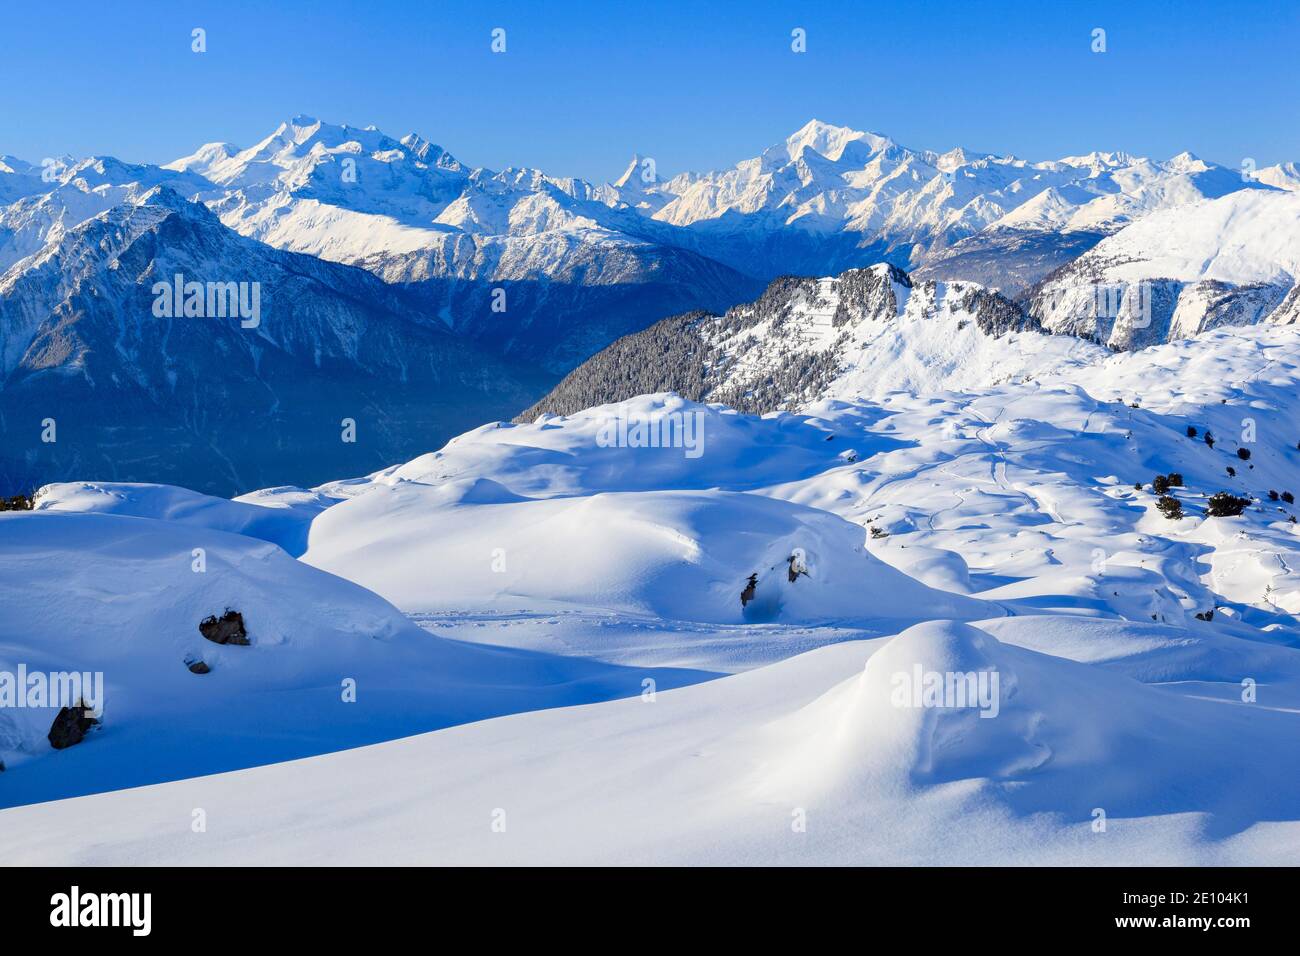 Alpes suisses, Alphubel, 4206 (m), Dom, 4545 m, Mischabel, Matterhorn, 4477 m, Weisshorn, 4505 m, Patrimoine mondial de l'UNESCO, Valais, Suisse, Europe Banque D'Images